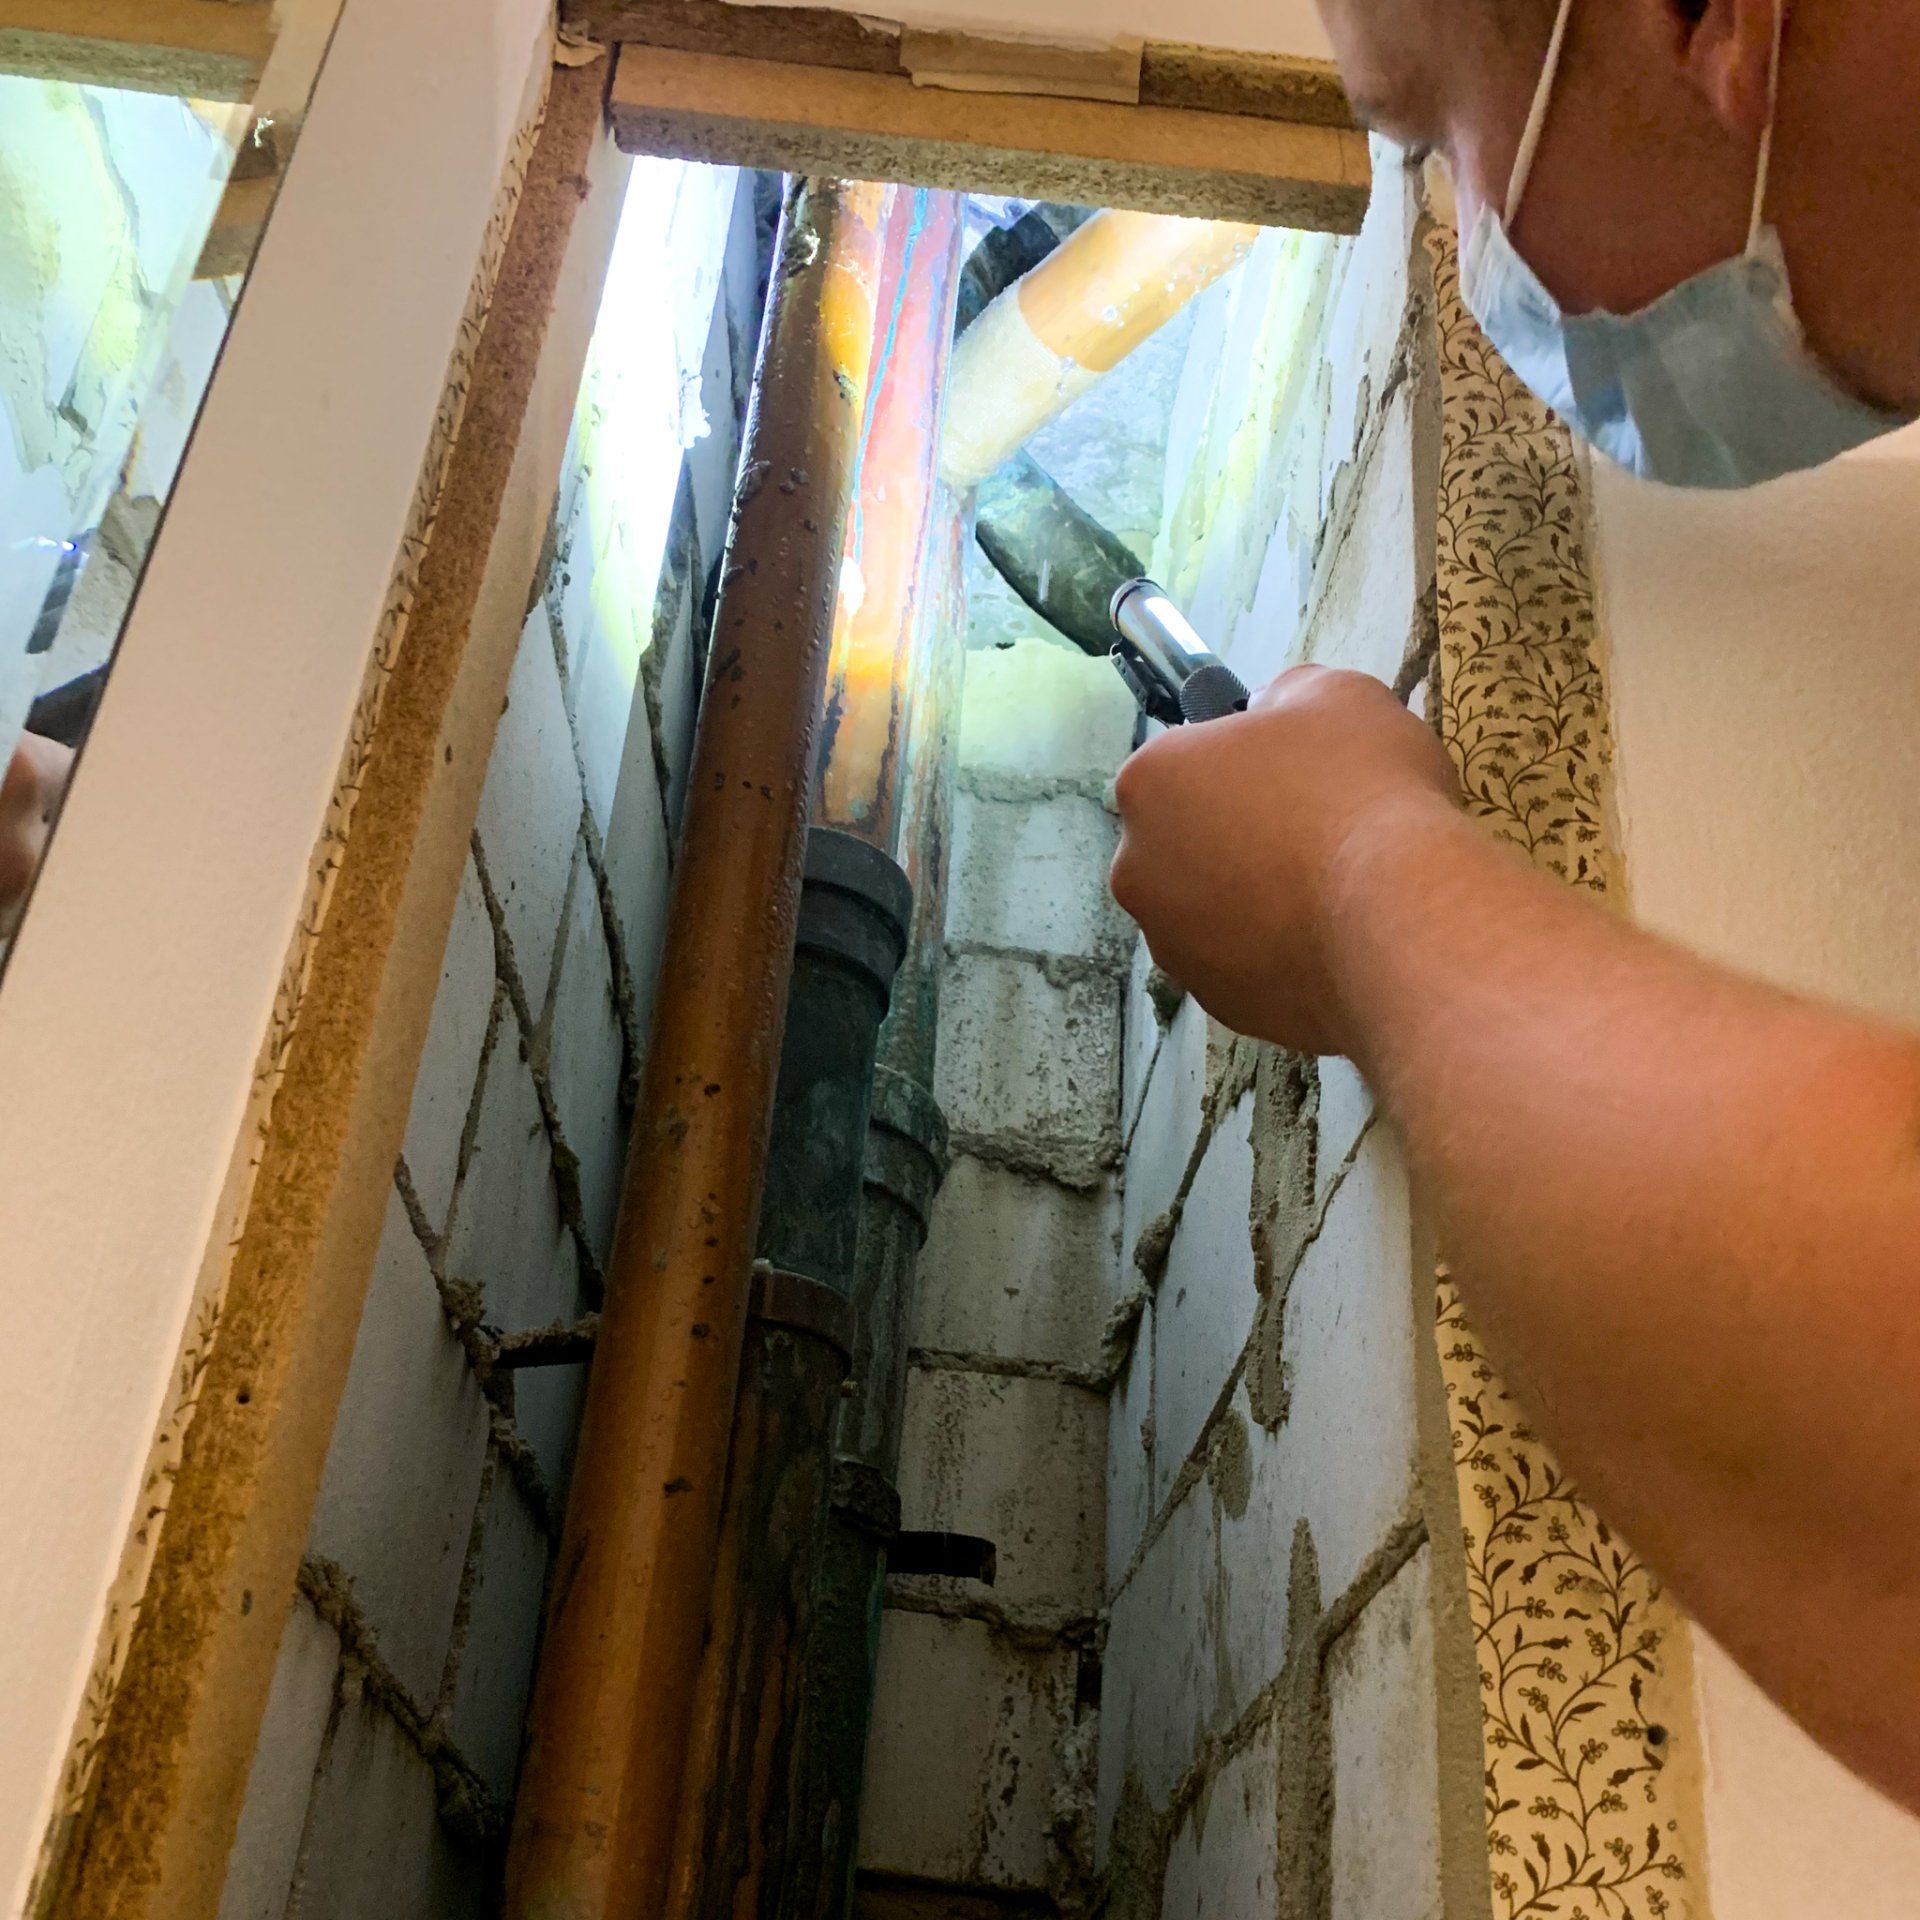 Network Plumbing leak detection Sydney inside wall